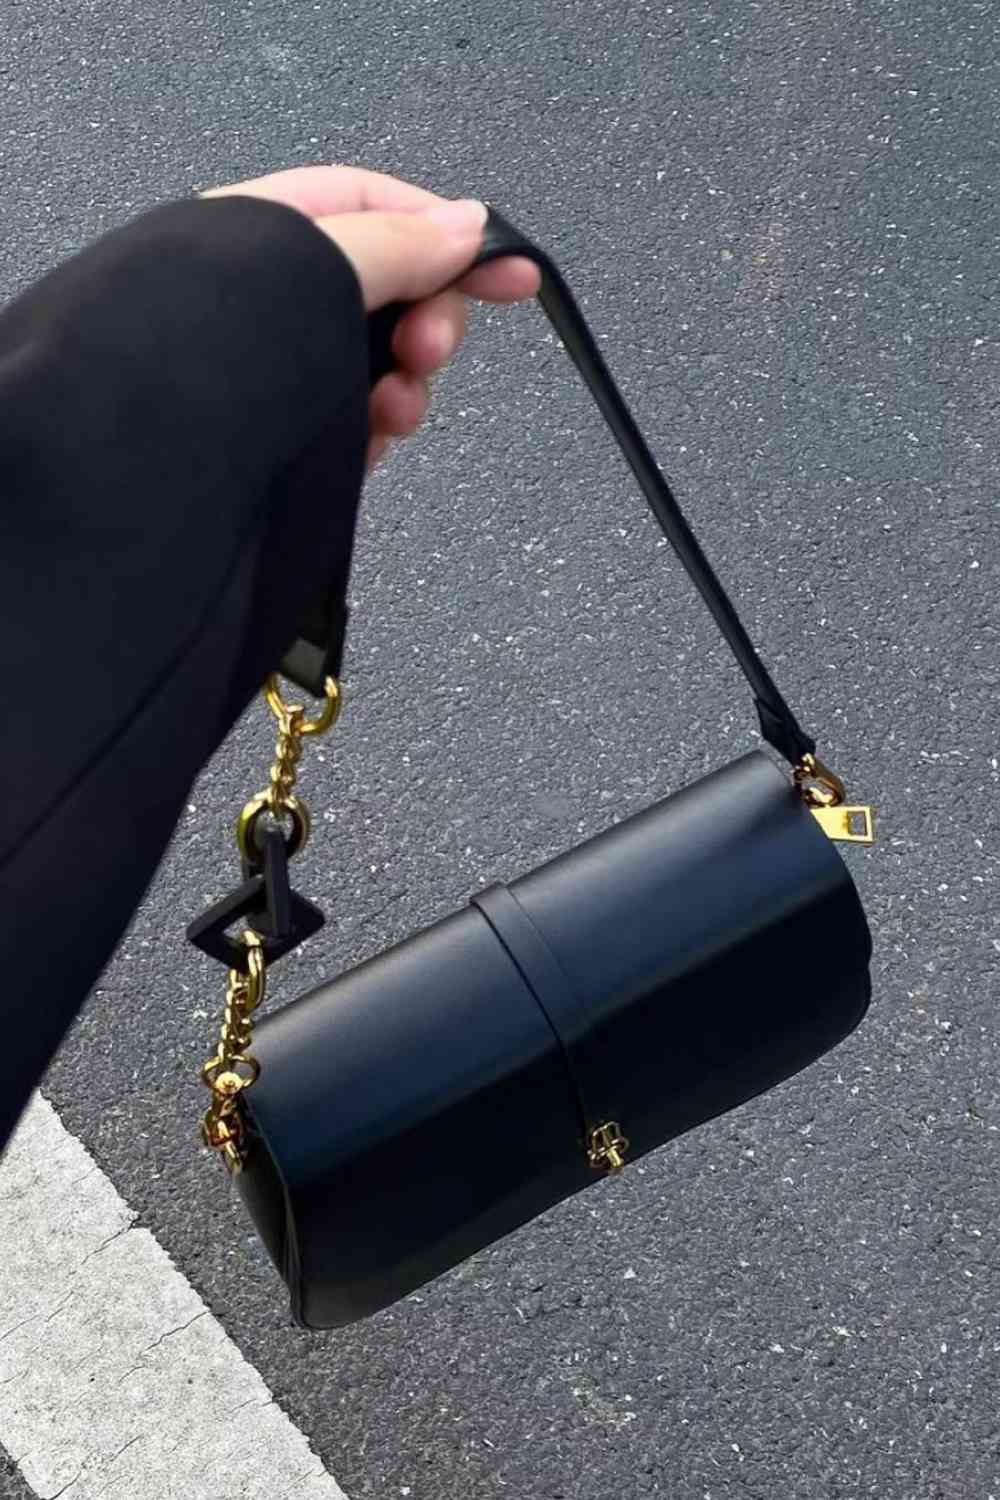 TEEK - Adored Away Handbag BAG TEEK Trend   